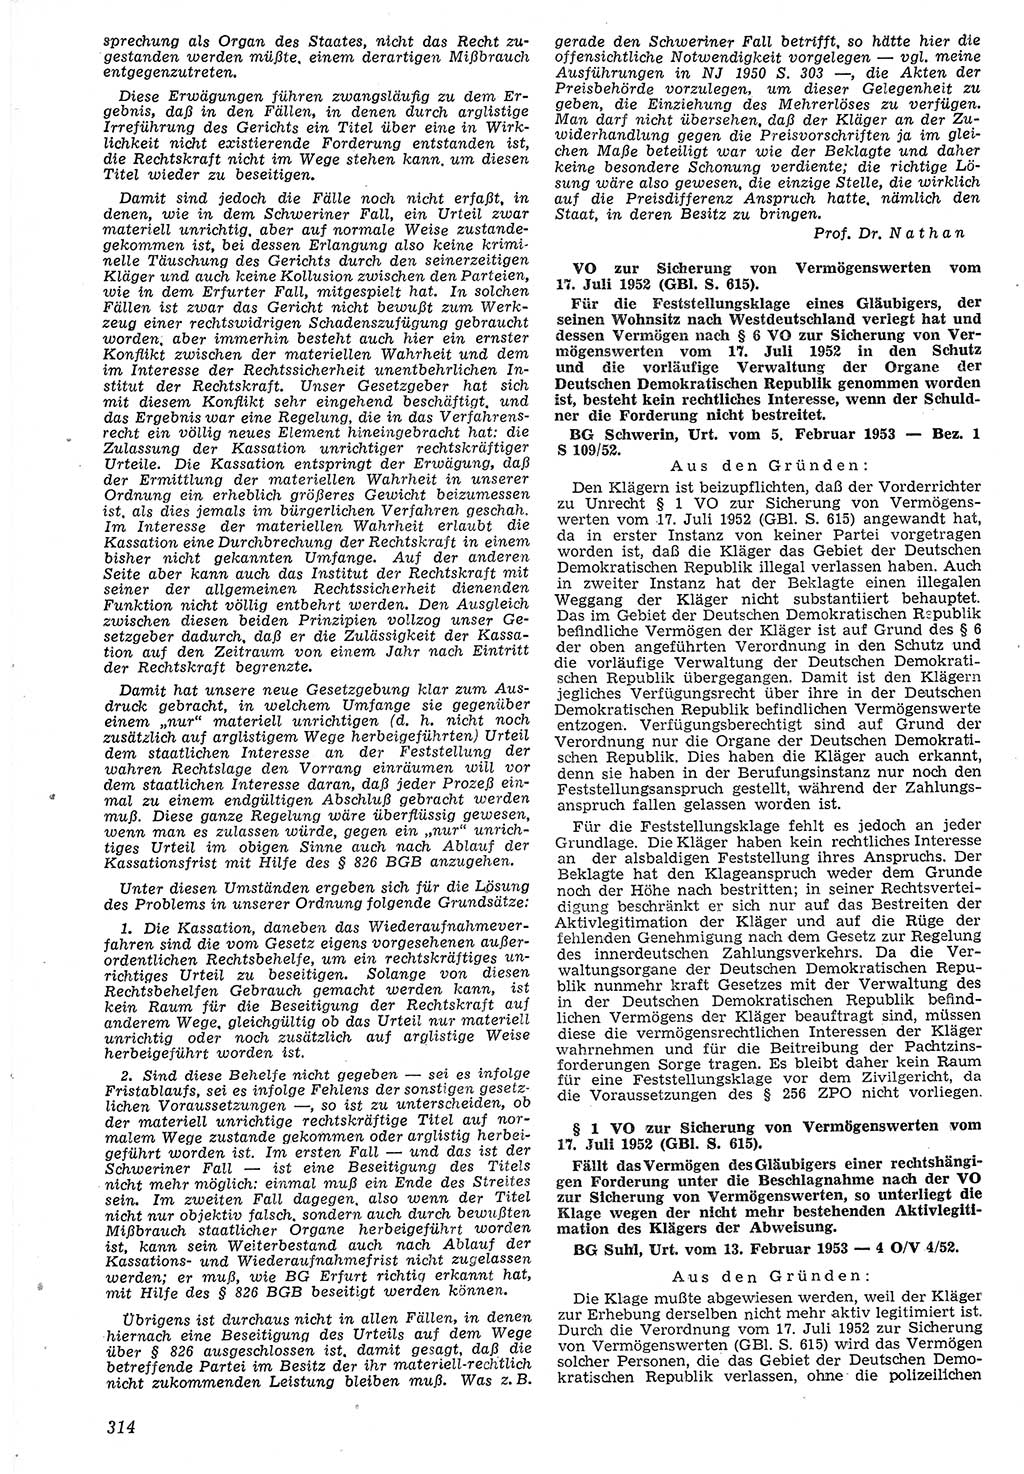 Neue Justiz (NJ), Zeitschrift für Recht und Rechtswissenschaft [Deutsche Demokratische Republik (DDR)], 7. Jahrgang 1953, Seite 314 (NJ DDR 1953, S. 314)